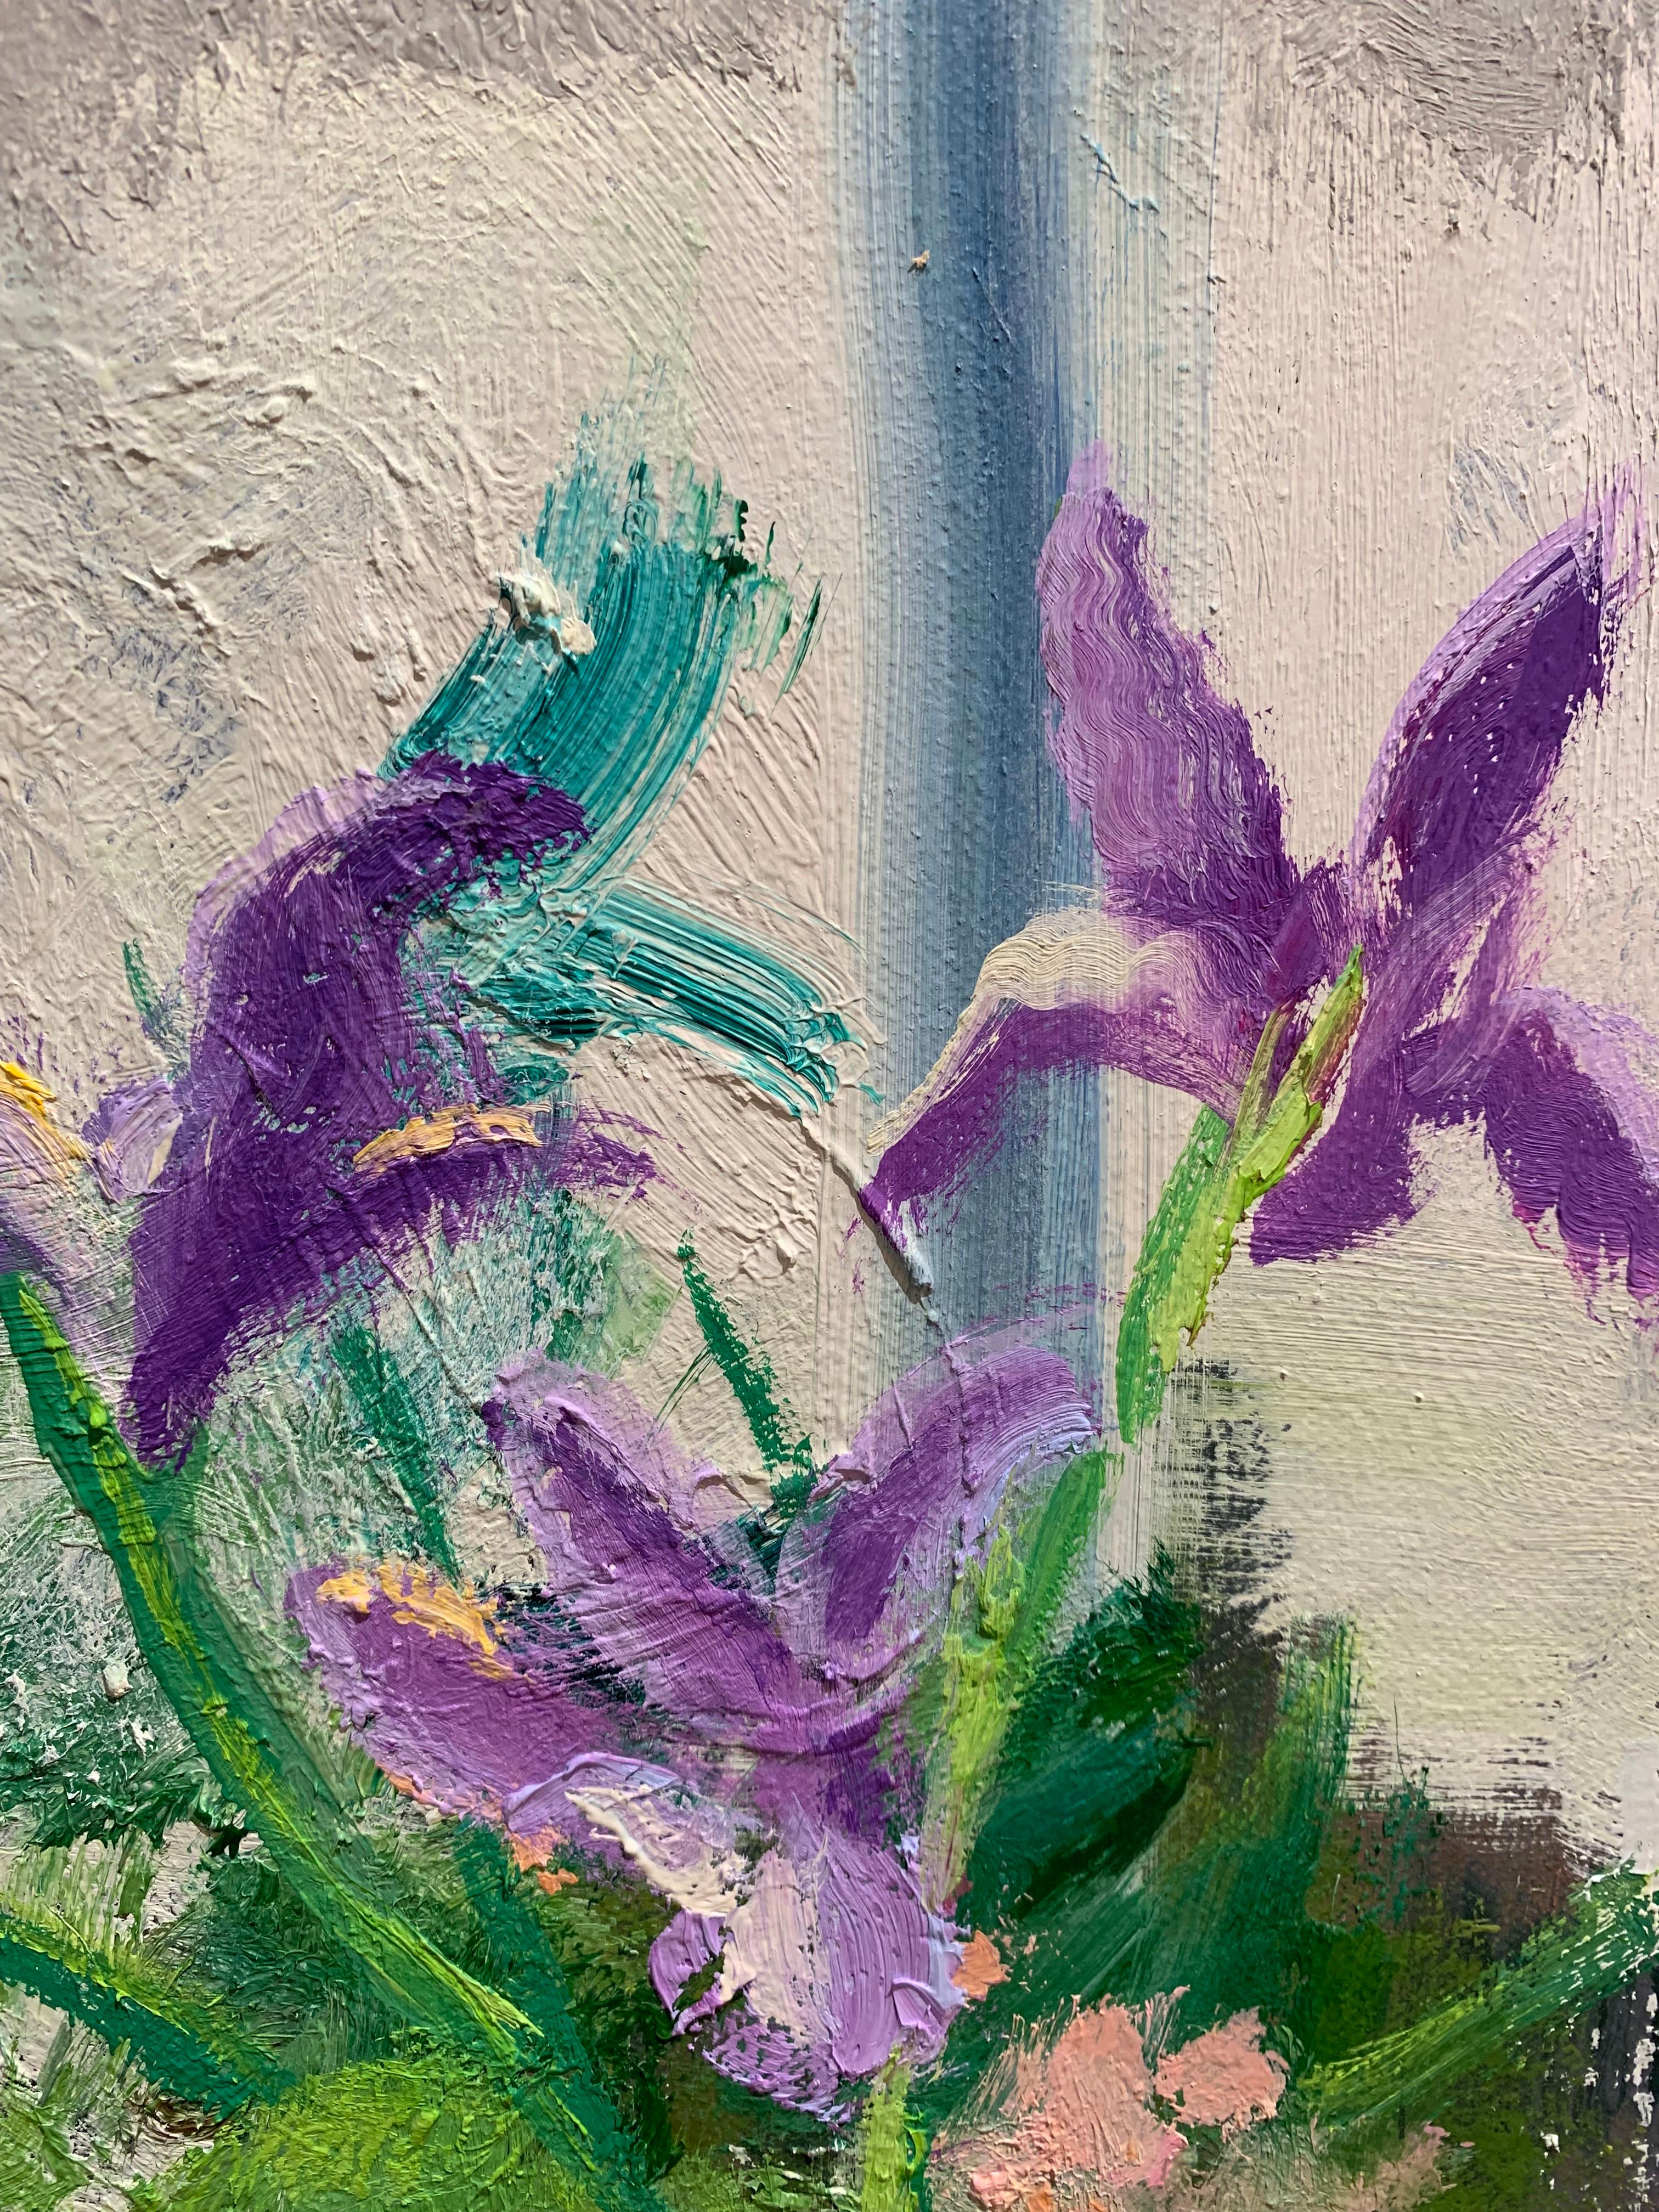 Spring Shore Still, impressionist floral still life painting - American Impressionist Painting by Melanie Parke